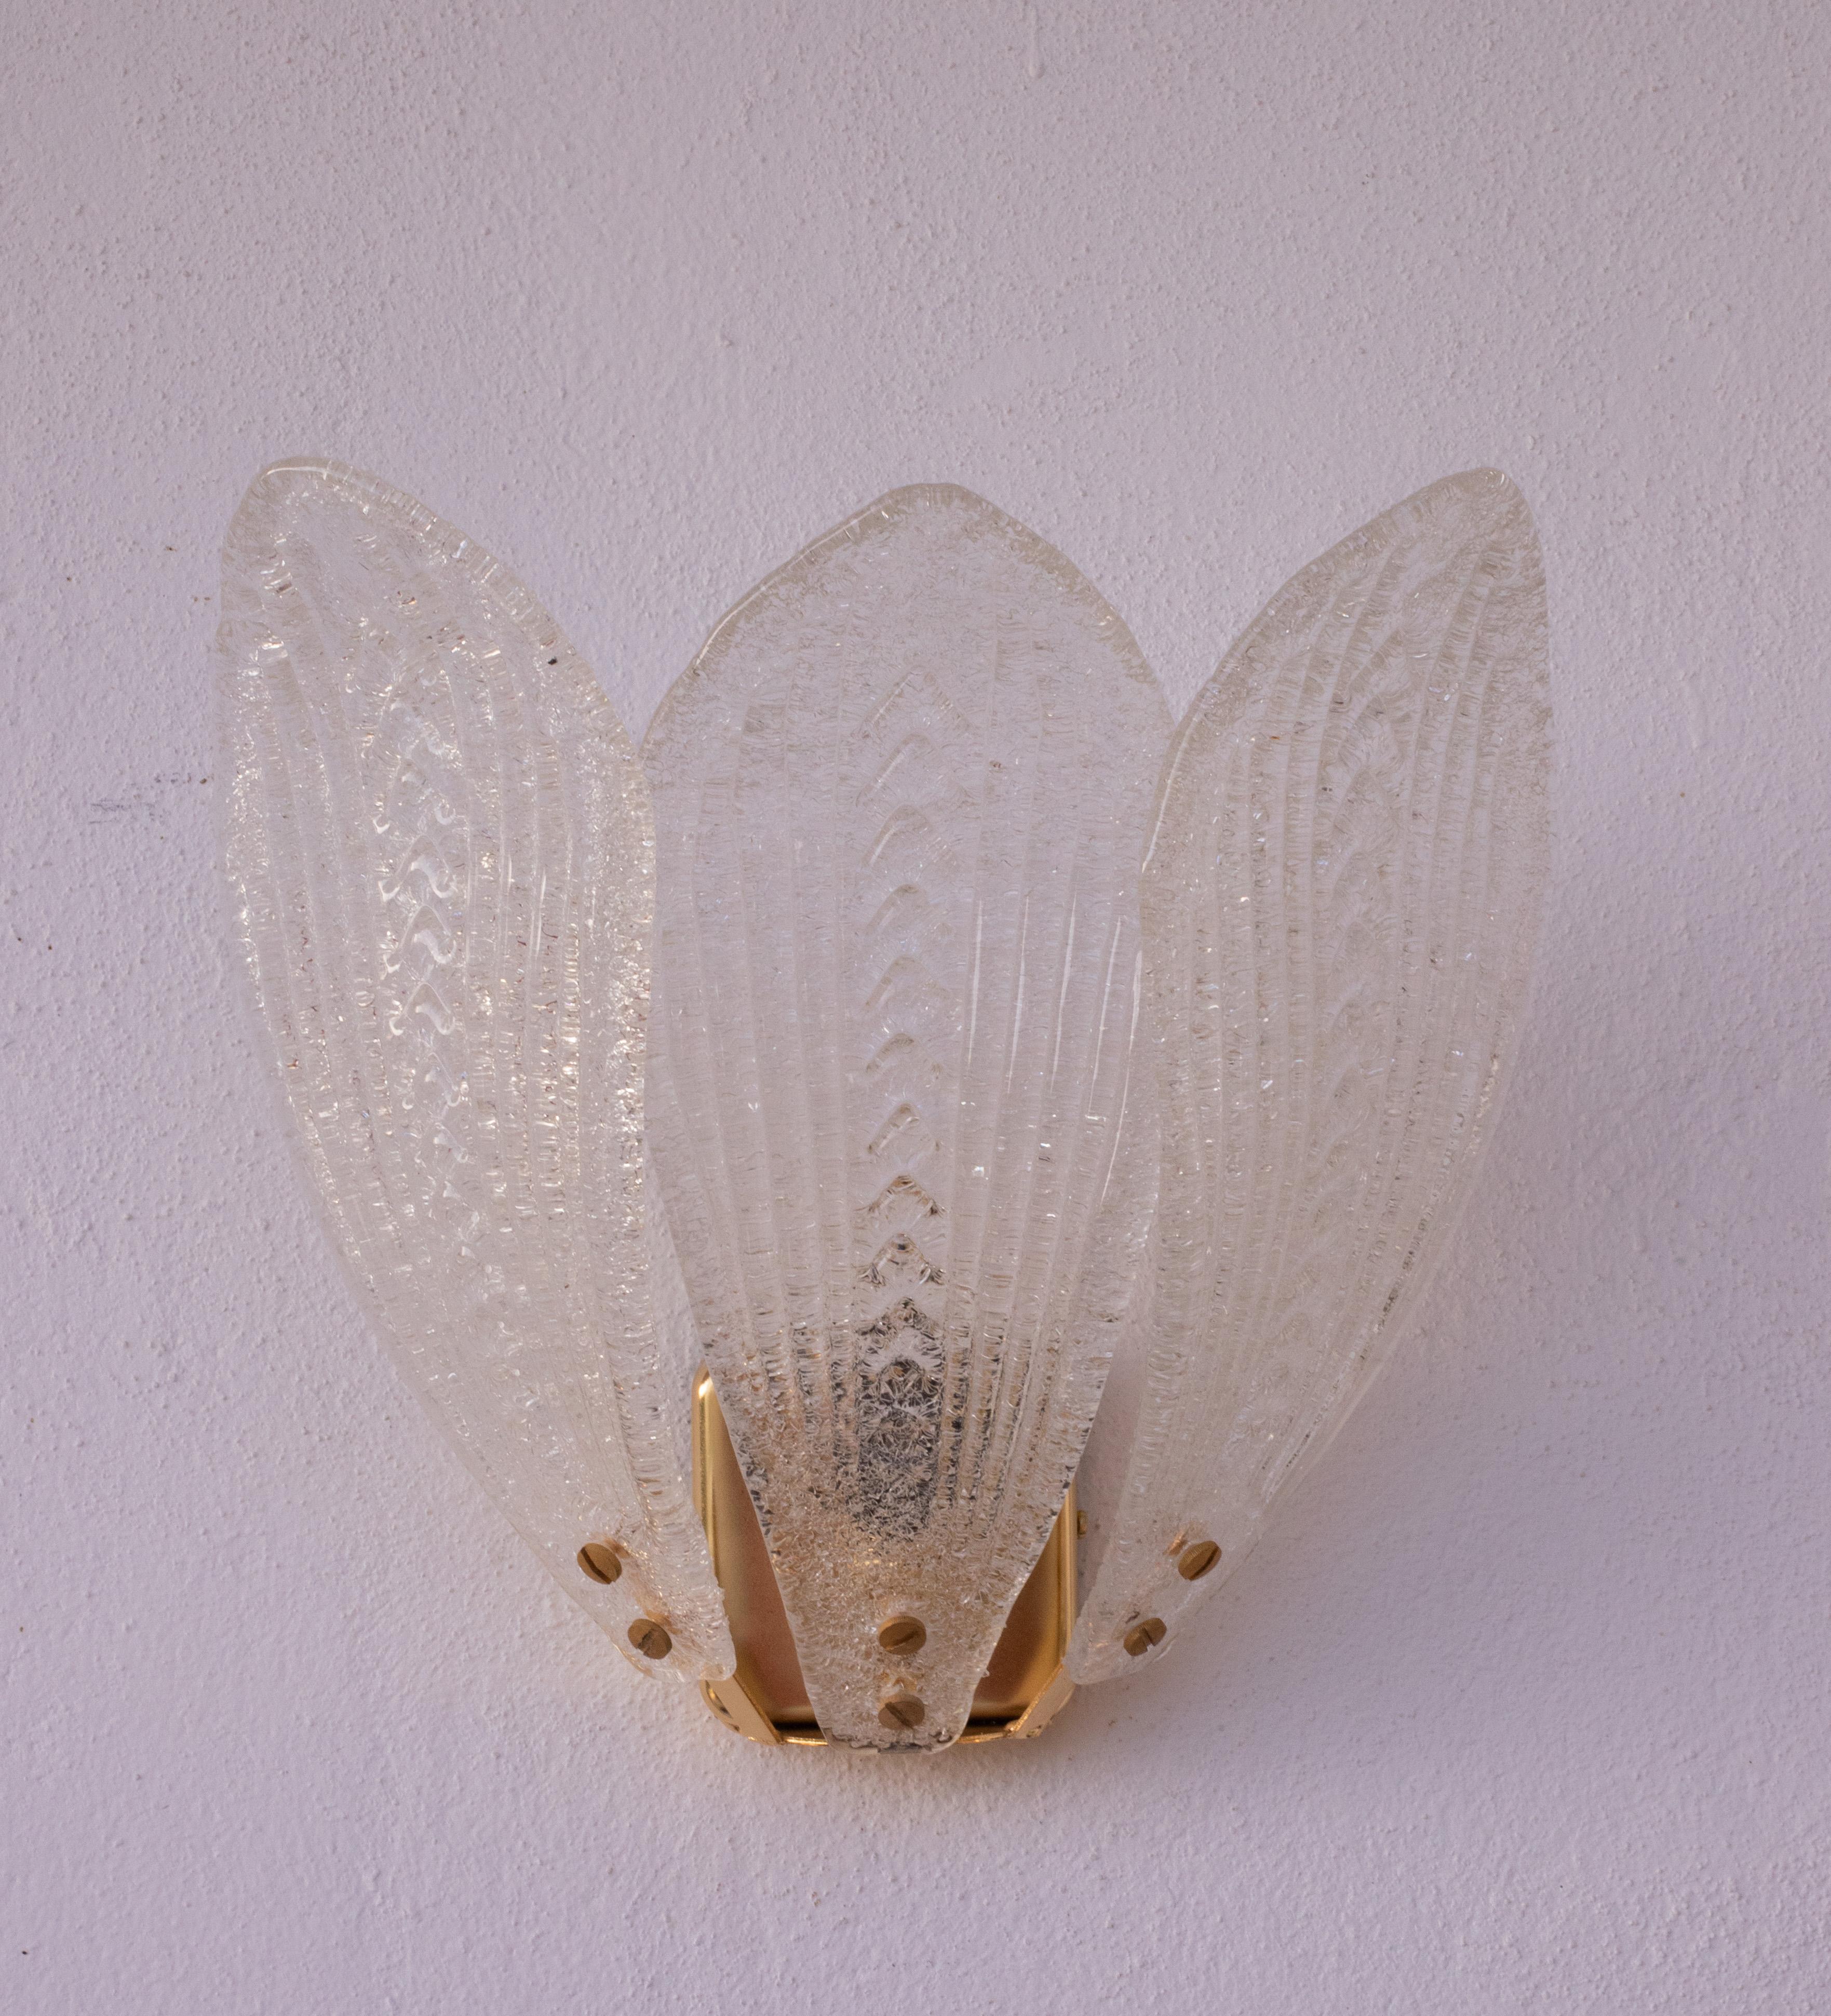 Atemberaubender Satz von 3 Murano Glas Wandlampen.

Die Lampen sind in perfektem Zustand mit einem neuen Goldbadrahmen.

Jede Lampe besteht aus 3 Blättern aus transparentem Glas.

Eine Lichtsteckdose, Möglichkeit der Verkabelung für Usa.

Maße: Höhe